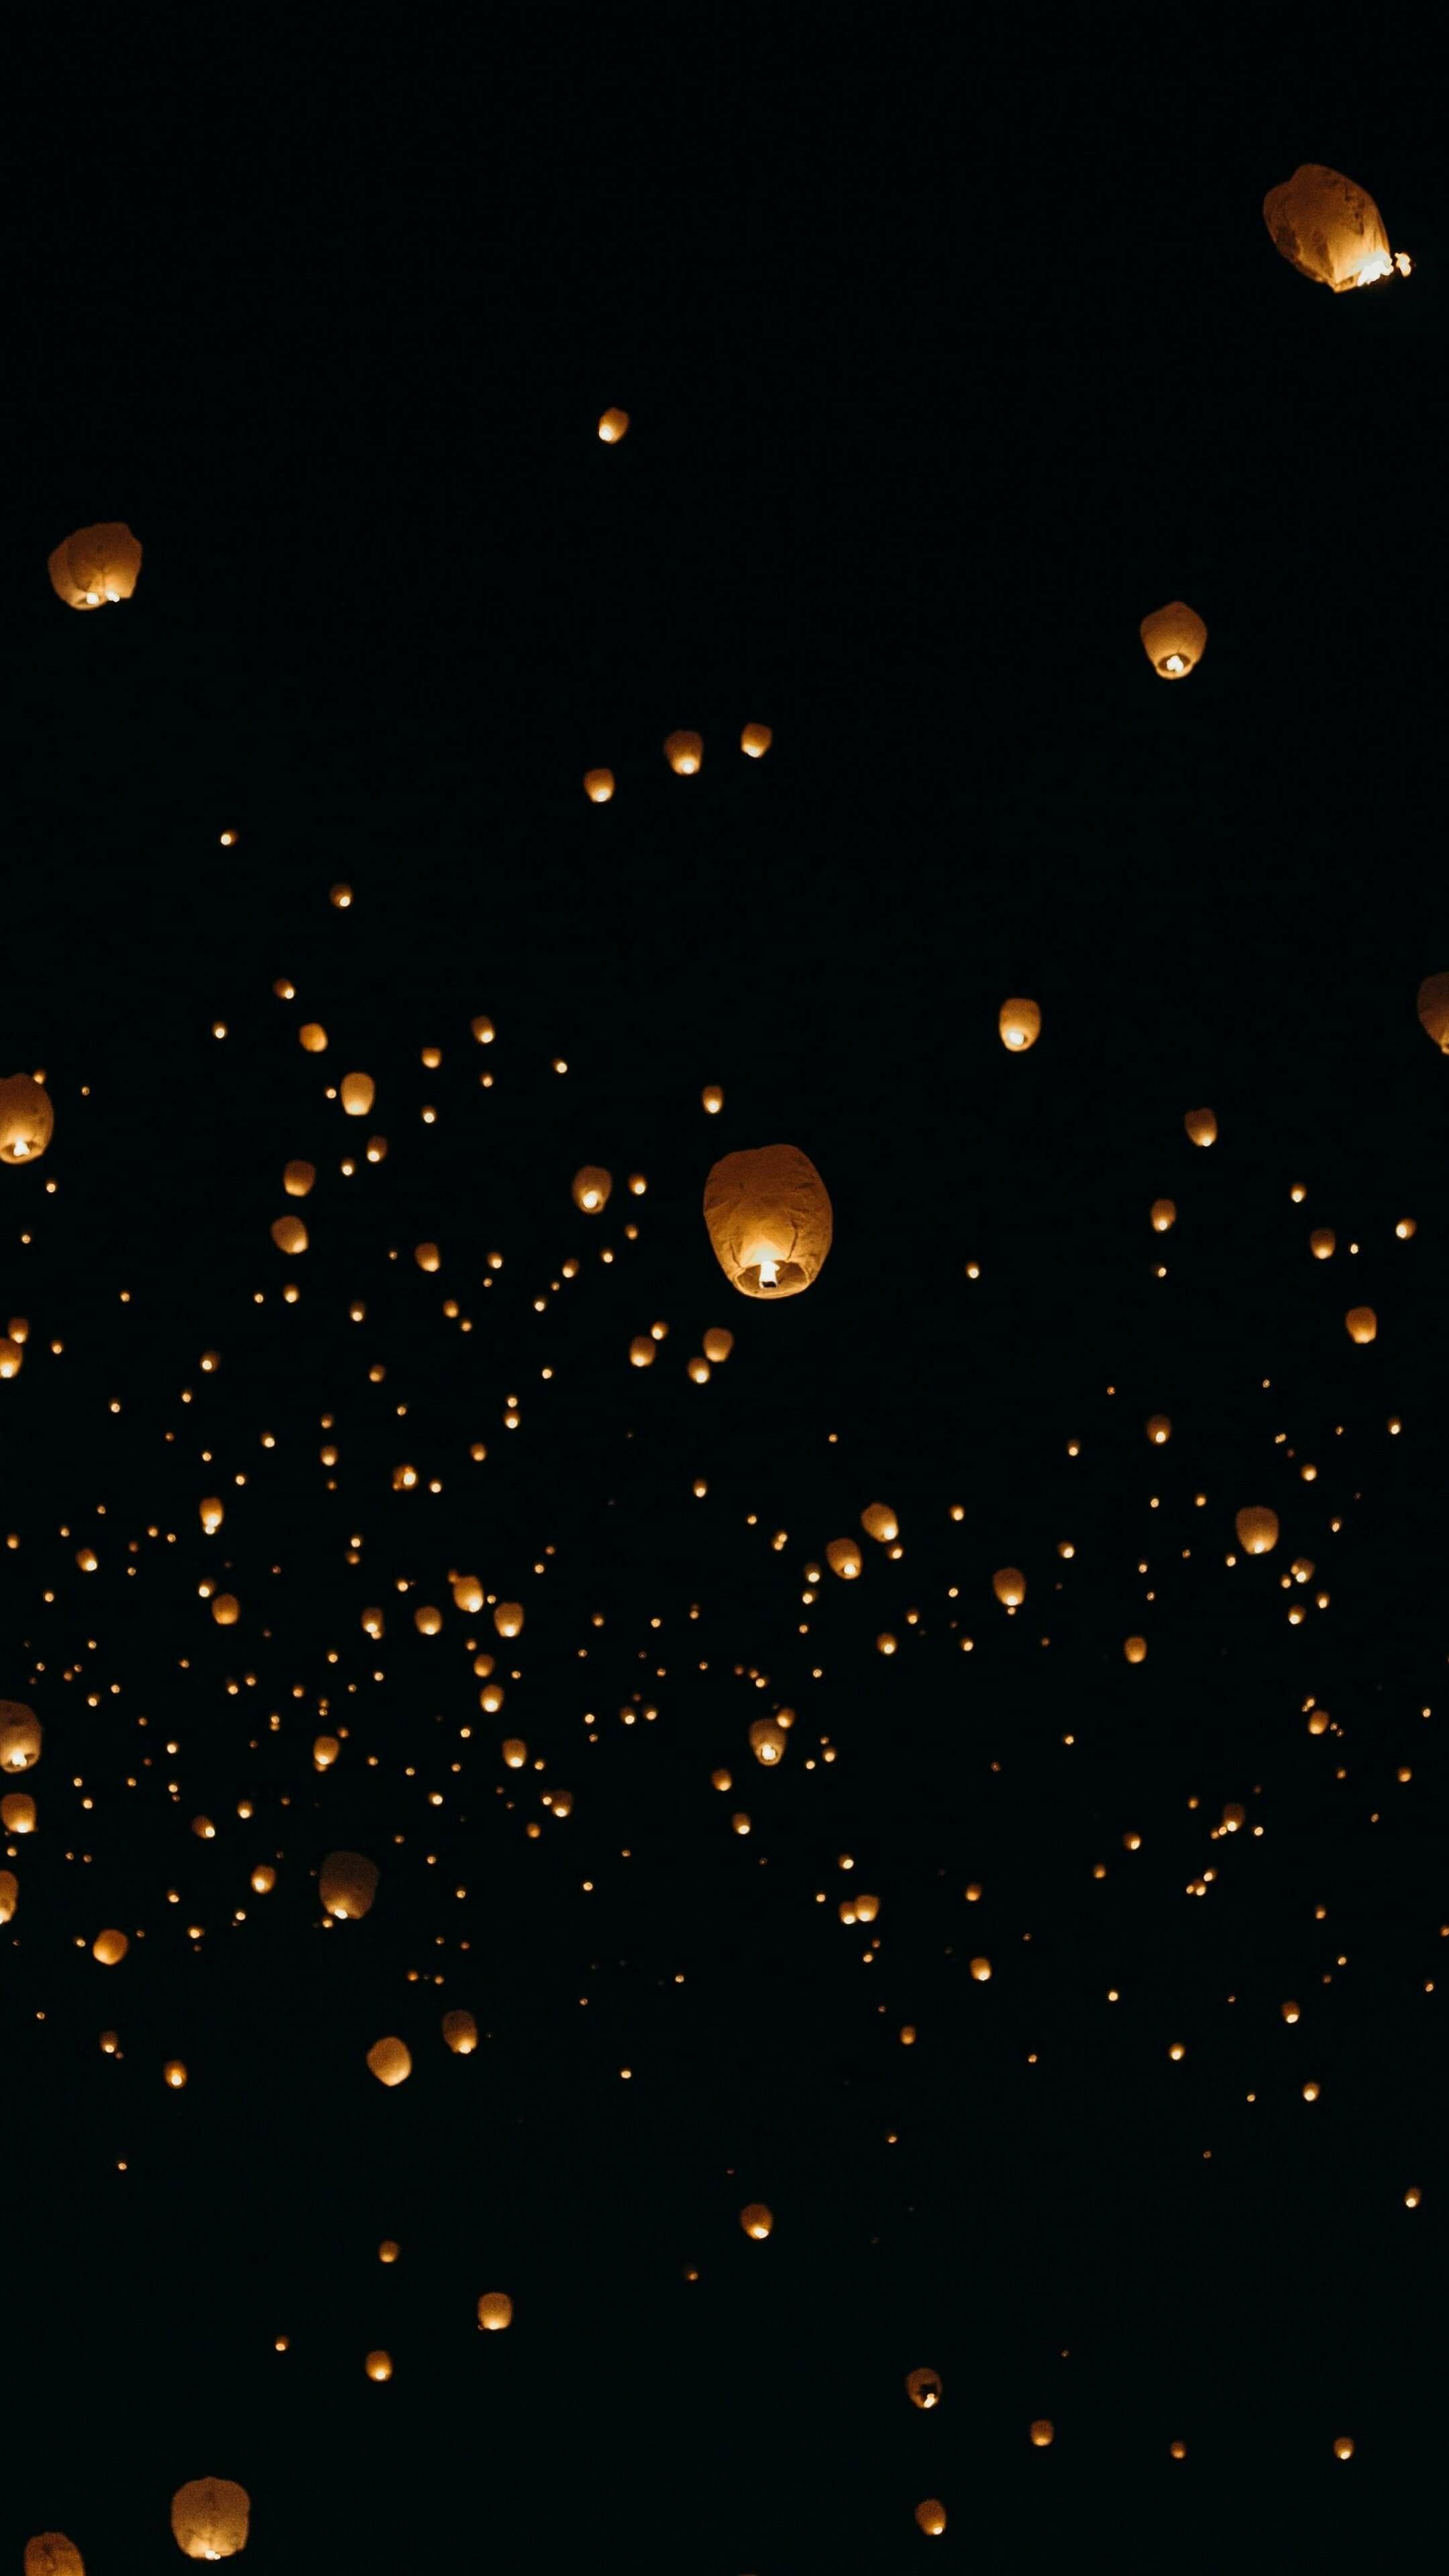 Lanterns: Loy Krathong, A small hot air balloon made of paper. 2160x3840 4K Wallpaper.